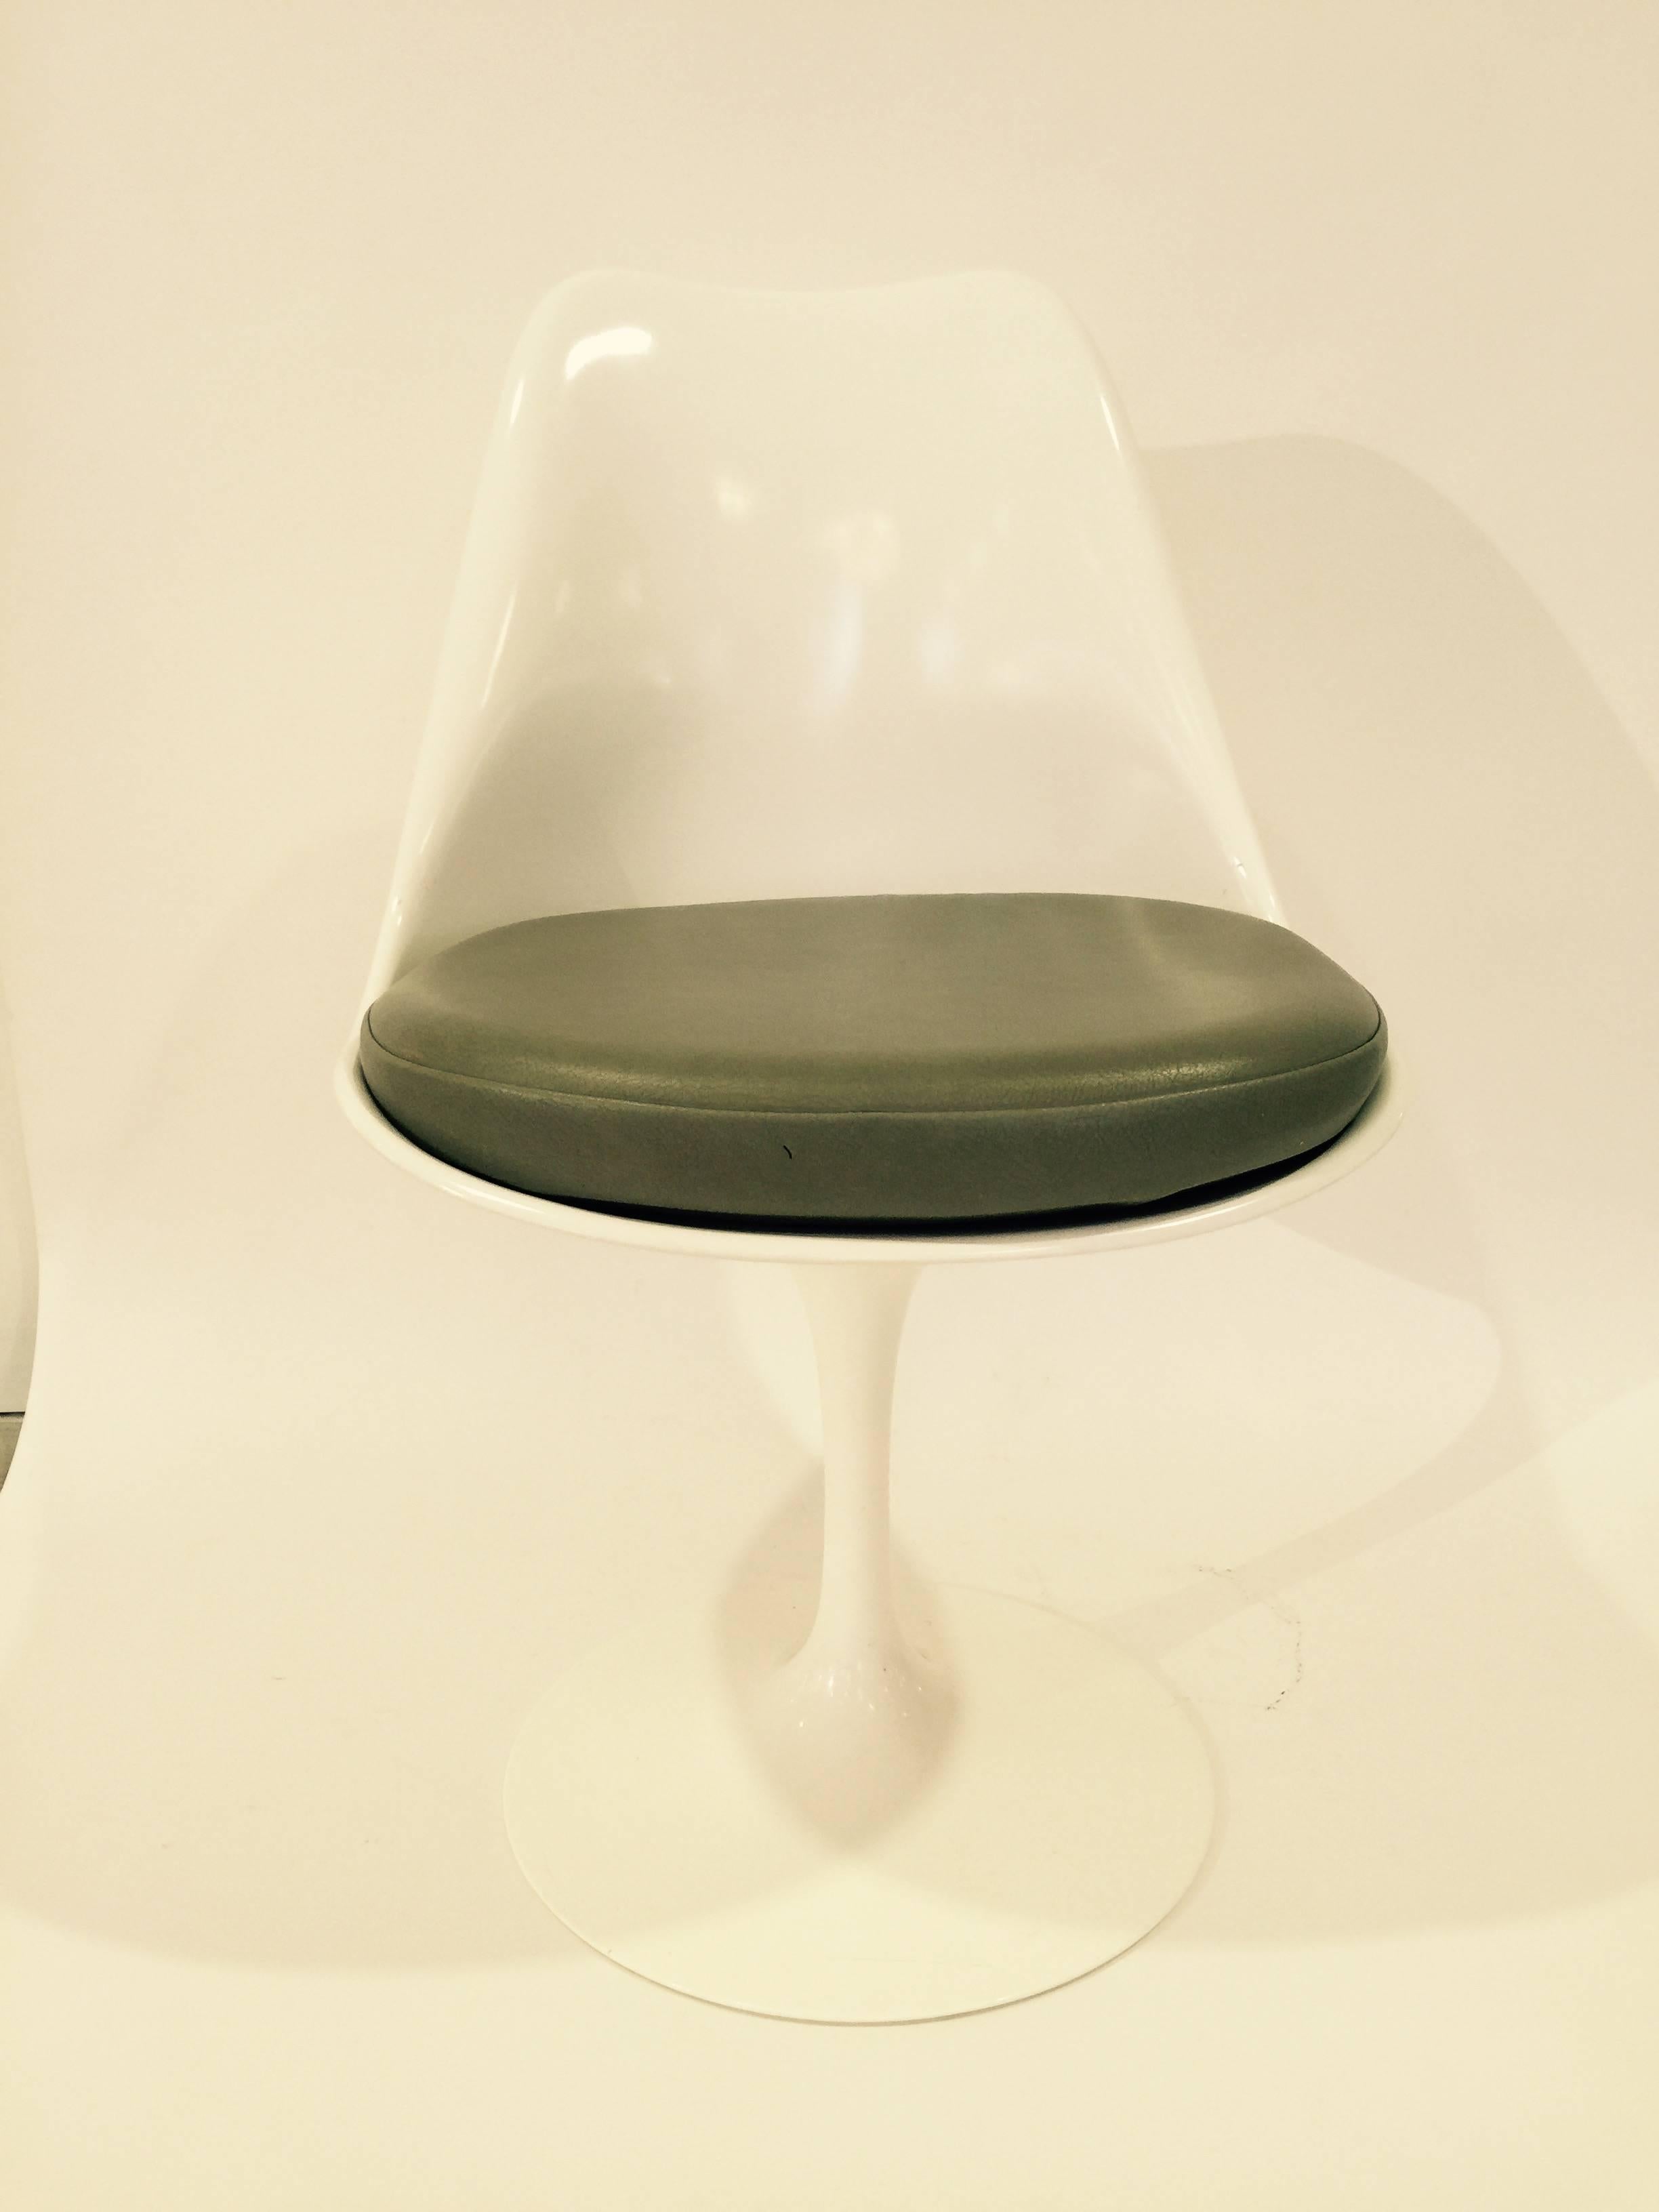 Mid-Century Modern Knoll Studio Saarinen White Tulip Dining Chairs